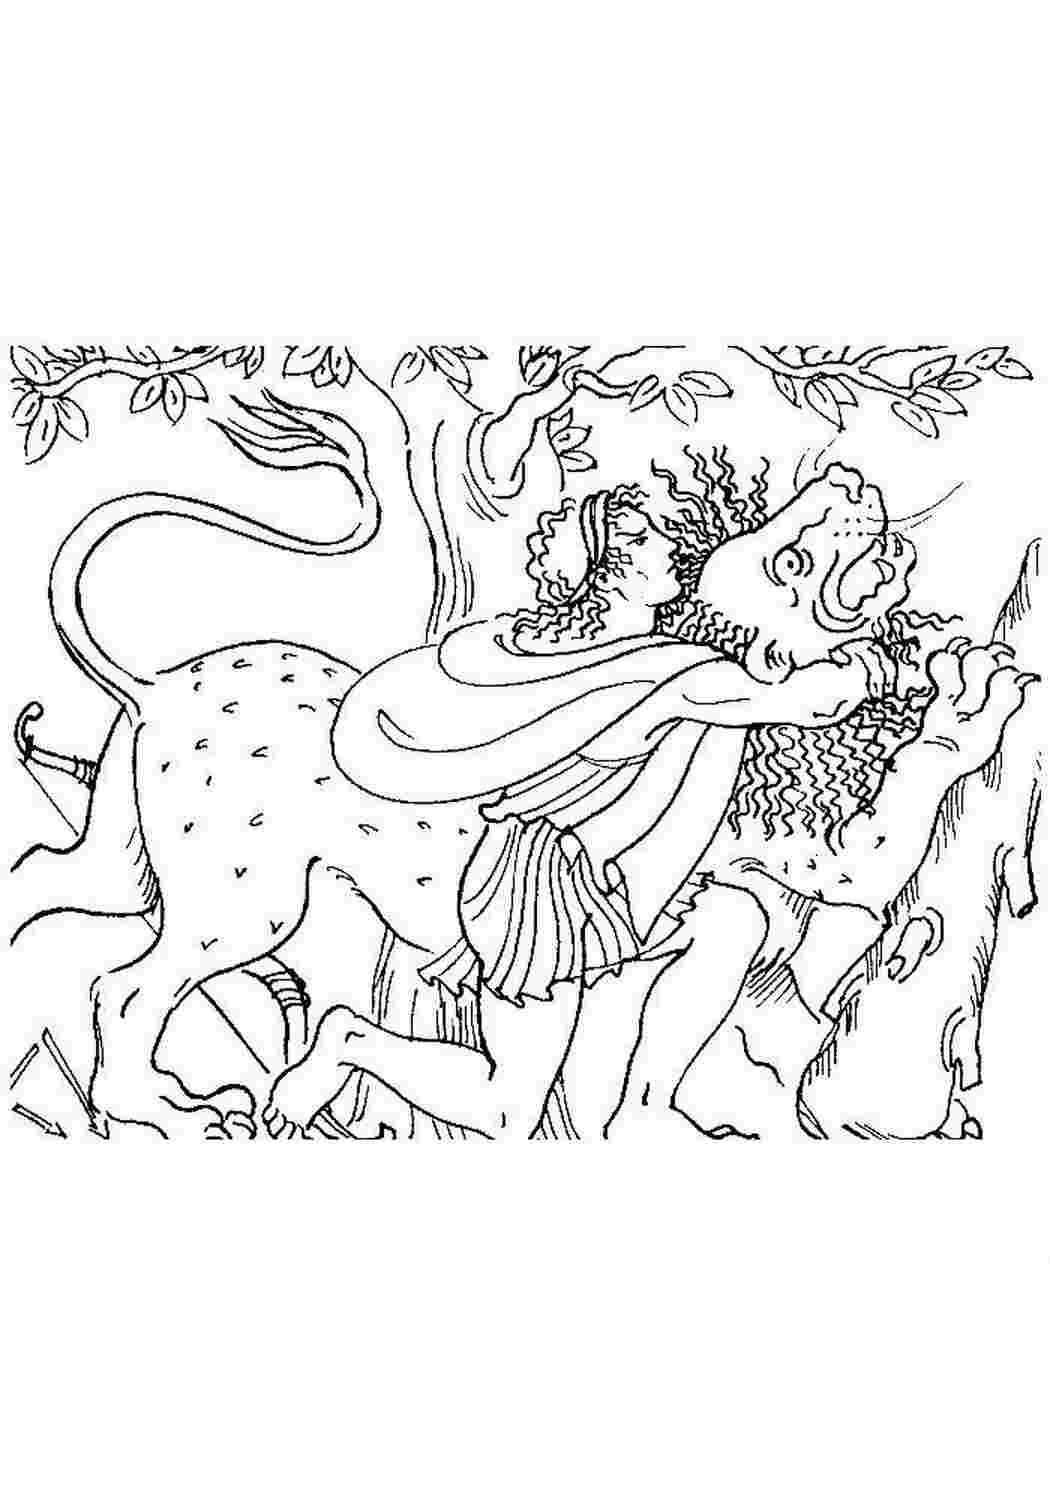 Миф Древней Греции - Геракл спасает Гесиону, дочь Лаомедонта